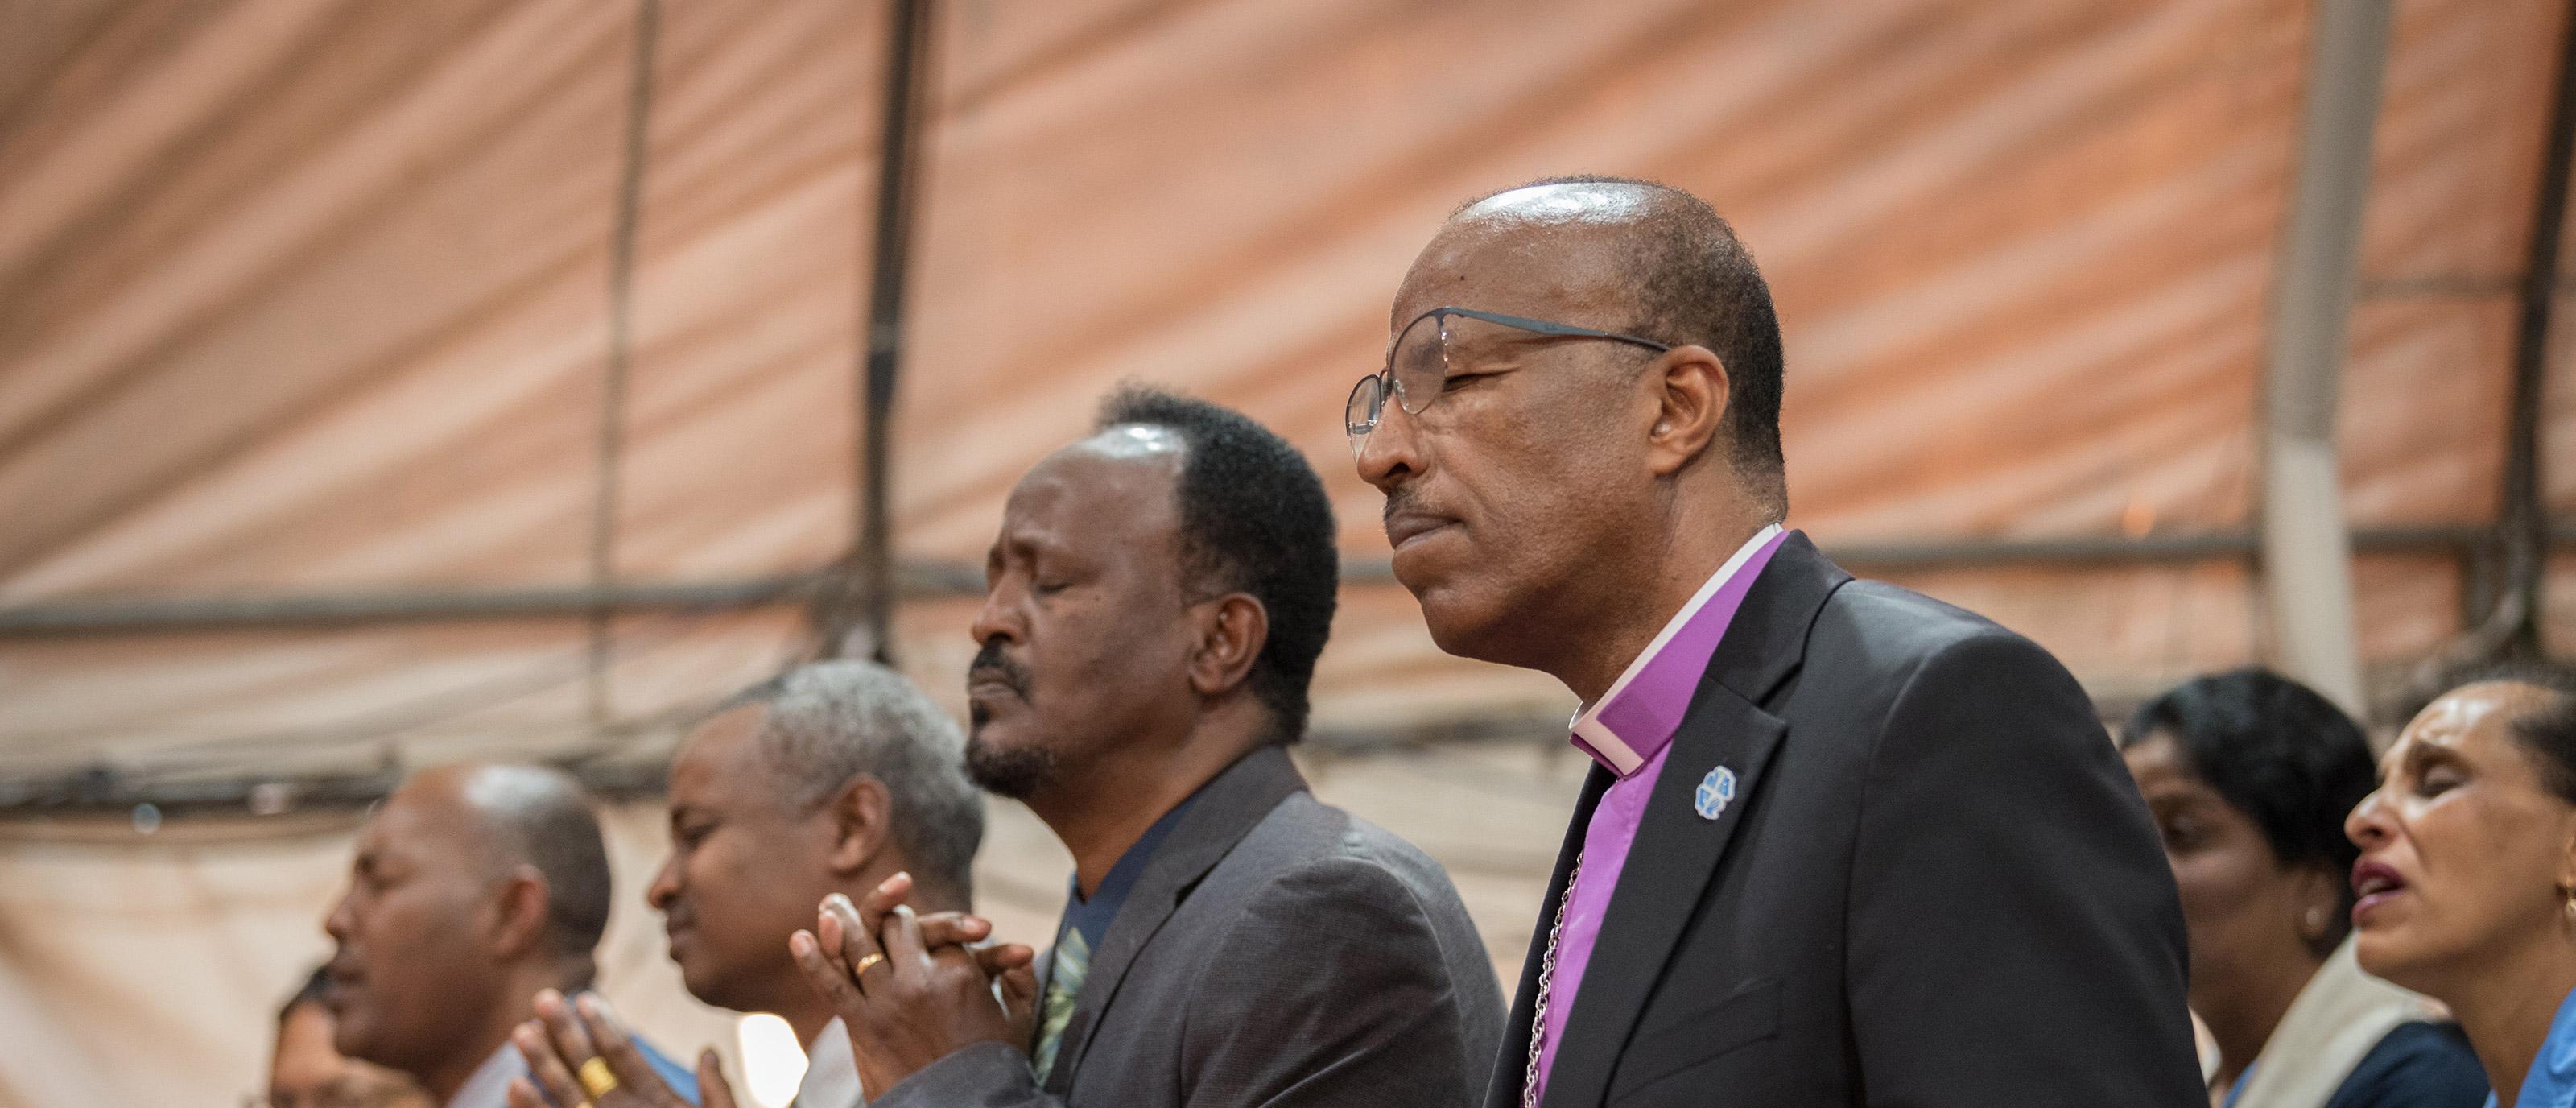 ÄEKMY-Präsident Pfr. Yonas Yigezu Dibisa und weitere Gläubige während des Sonntagsgottesdienstes in einer der Kirchengemeinden in der Hauptstadt Addis Abeba. Foto: LWB/Albin Hillert